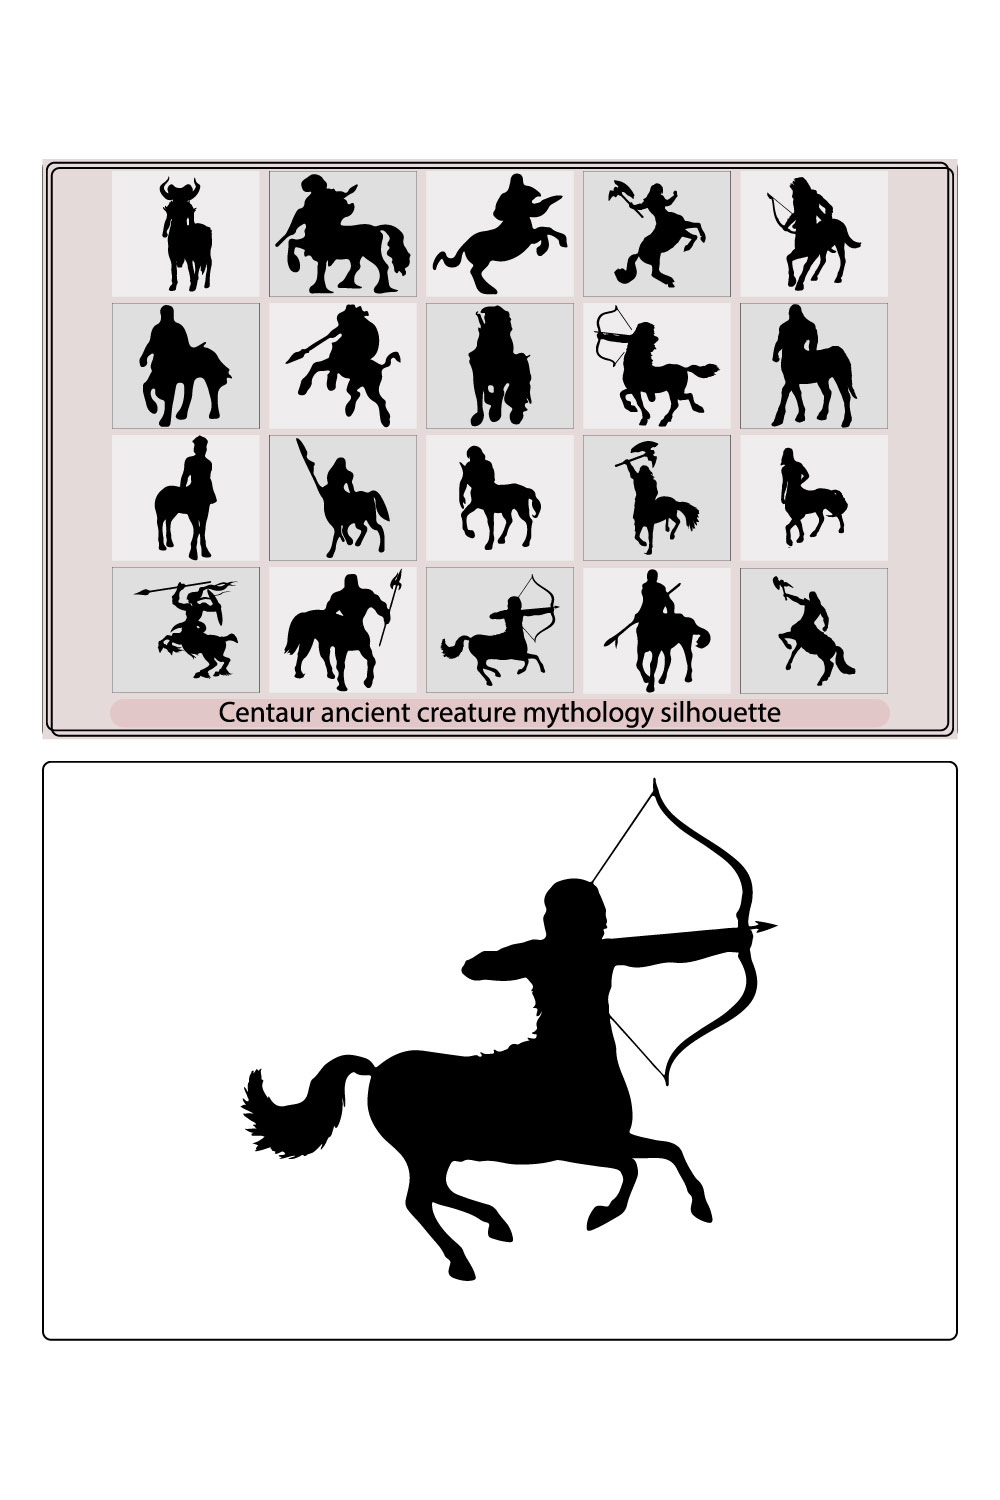 Centaur ancient creature mythology silhouette pinterest preview image.